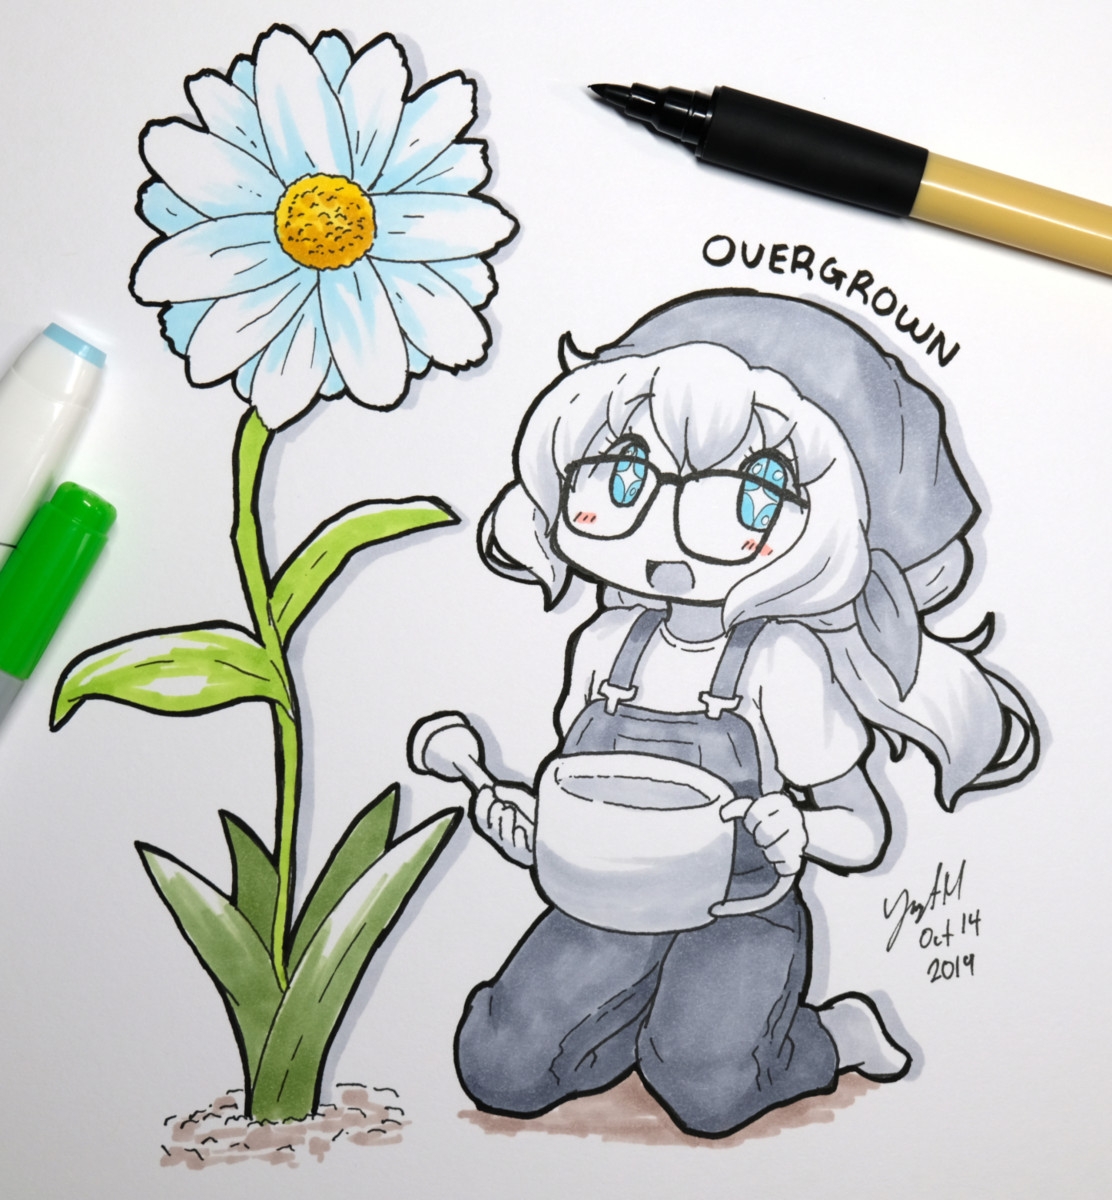 Overgrown - [October 14, 2019]